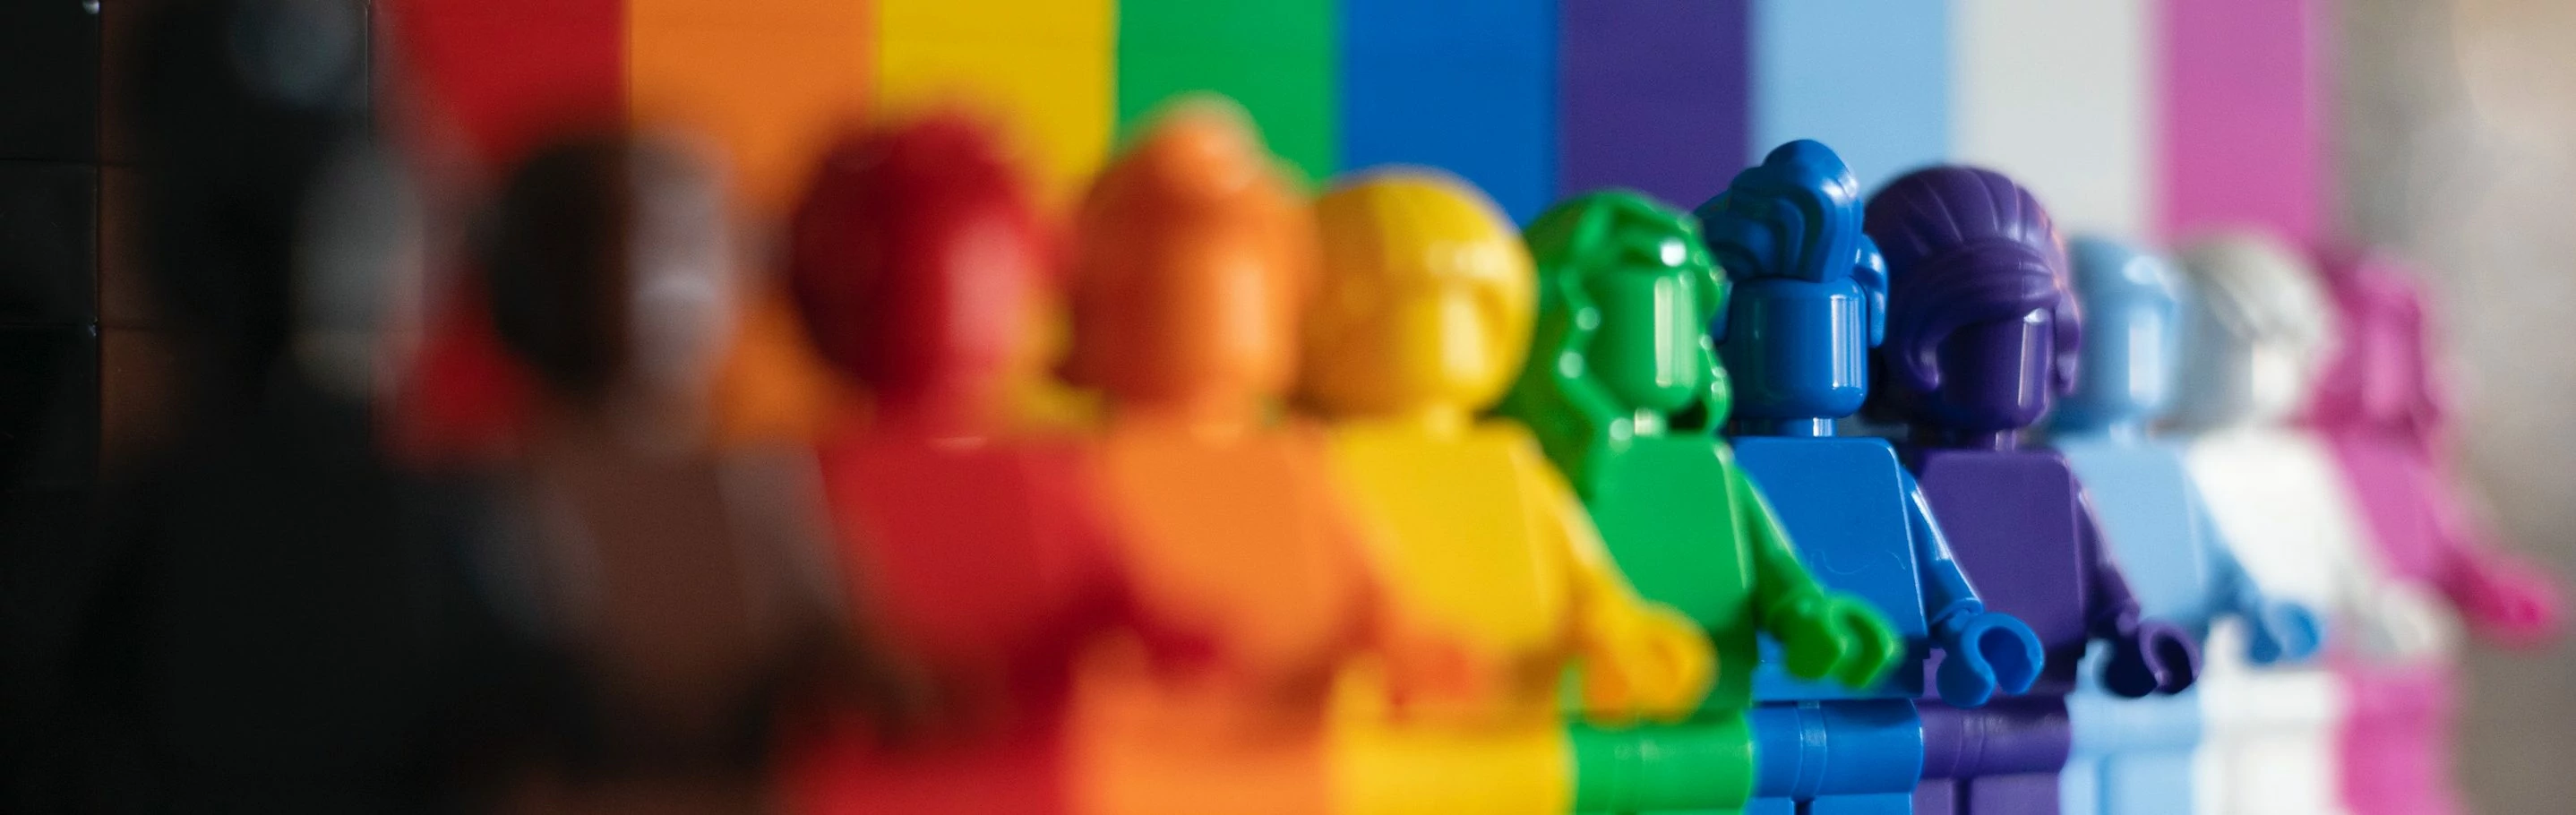 Eine Reihe von Lego-Figuren in unterschiedlichsten Farben